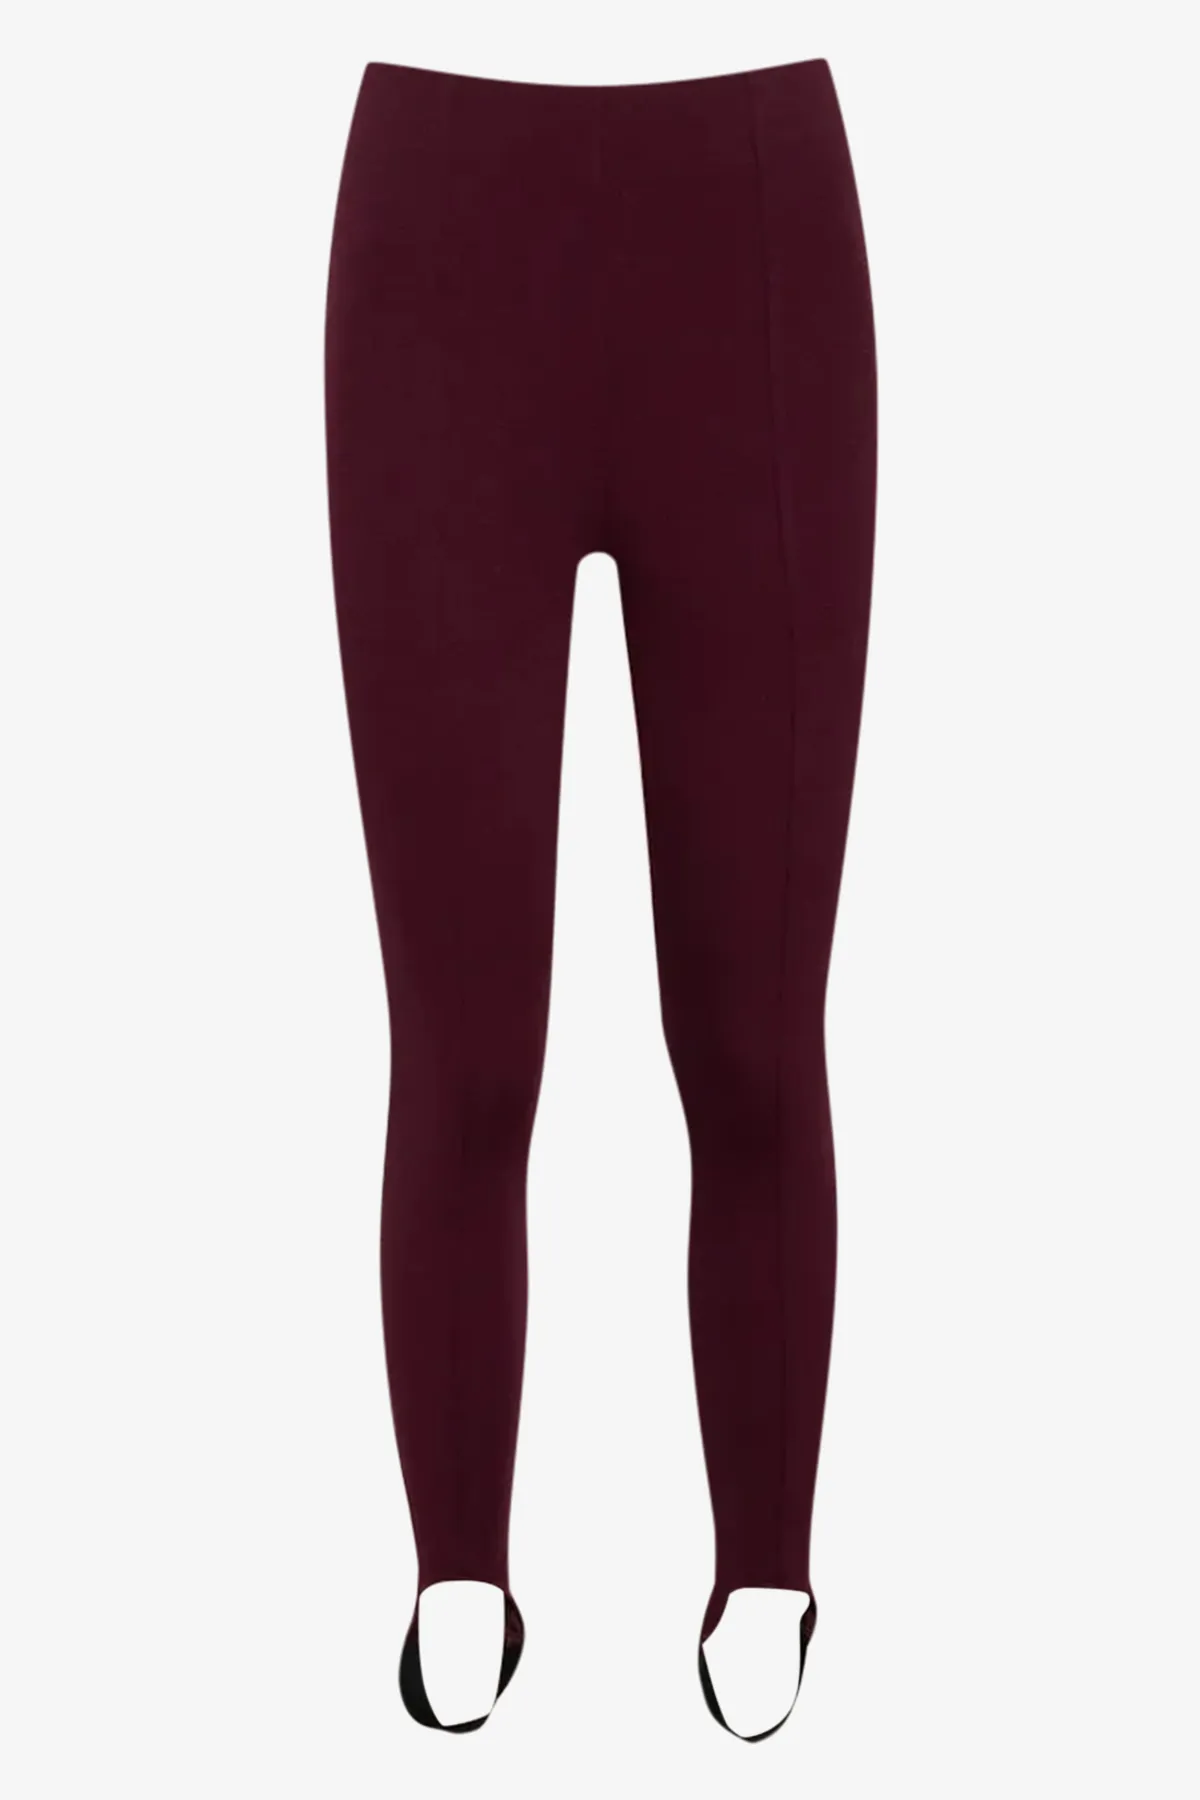 Strirrup leggings burgundy - Women's Leggings